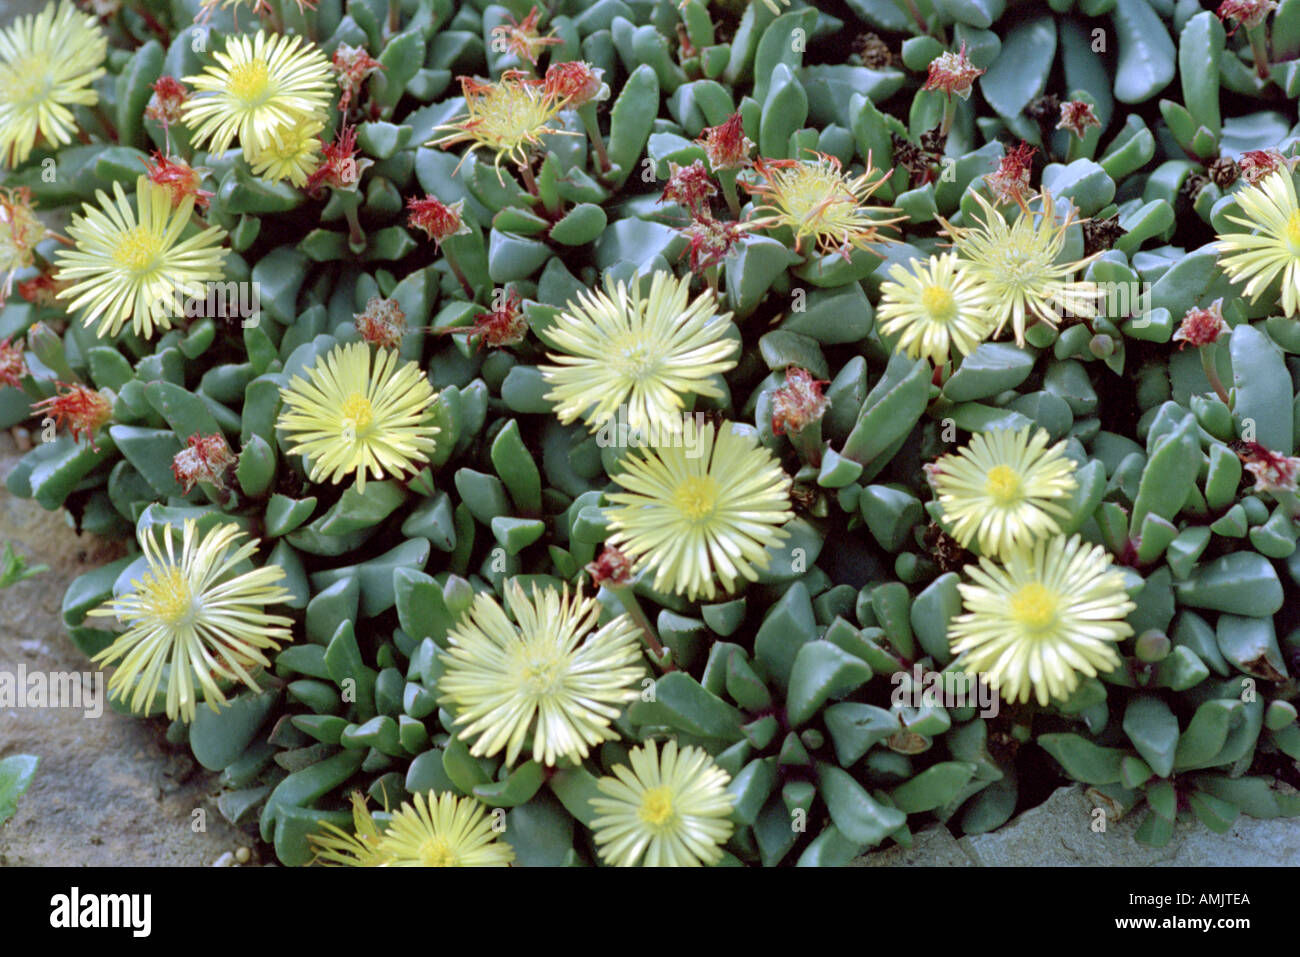 Stone Plants or Carpet Weeds Bijlia tugwelliae syn. Hereroa tugwelliae Aizoaceae Stock Photo